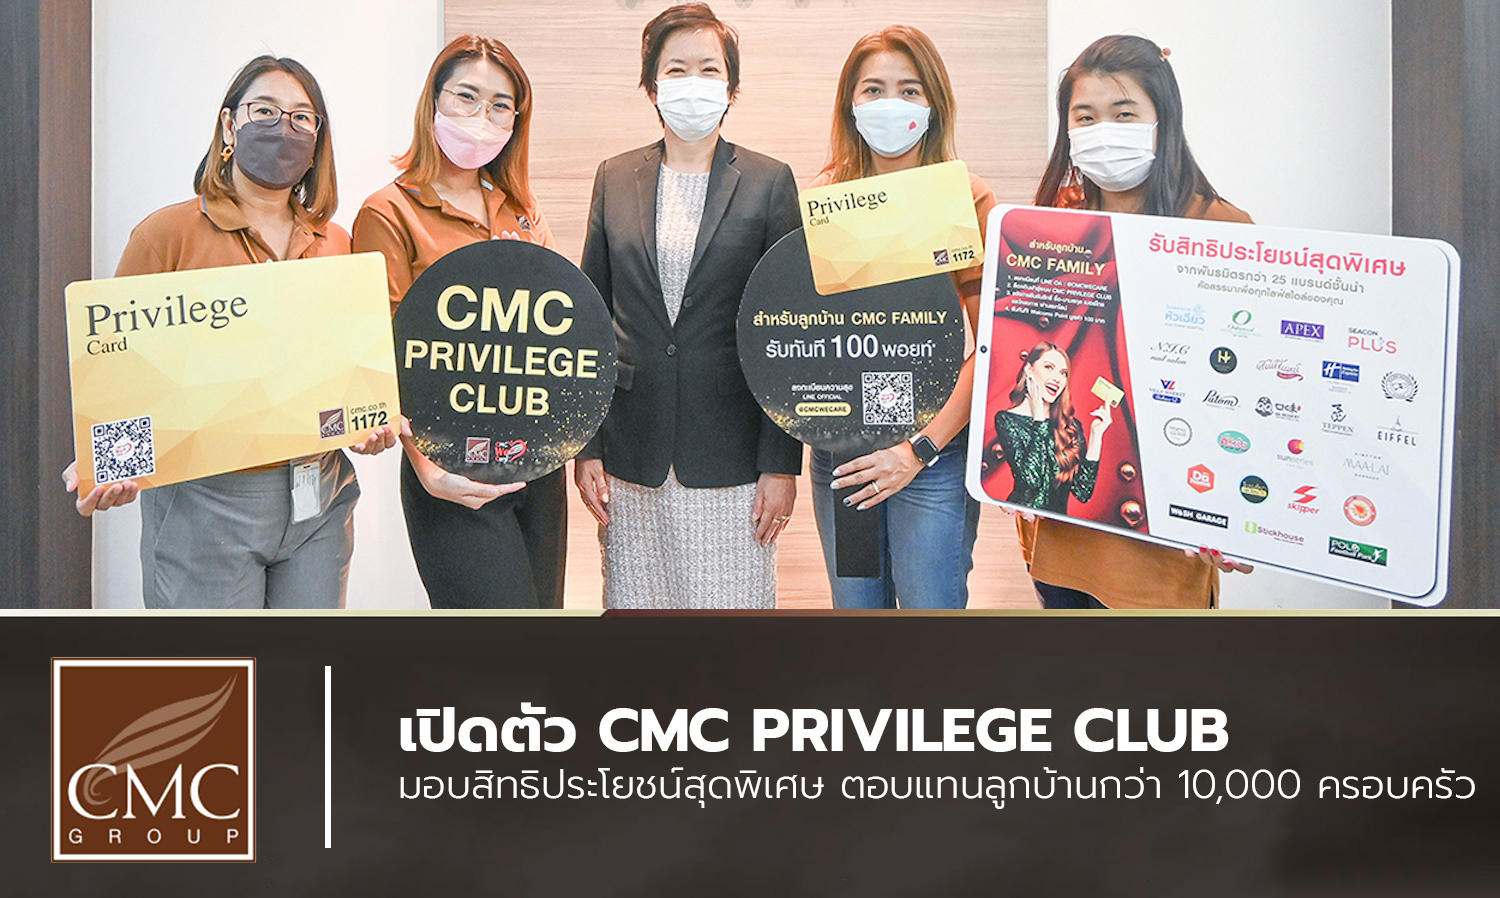  เปิดตัว CMC Privilege Club มอบสิทธิประโยชน์สุดพิเศษ ตอบแทนลูกบ้านกว่า 10,000 ครอบครัว